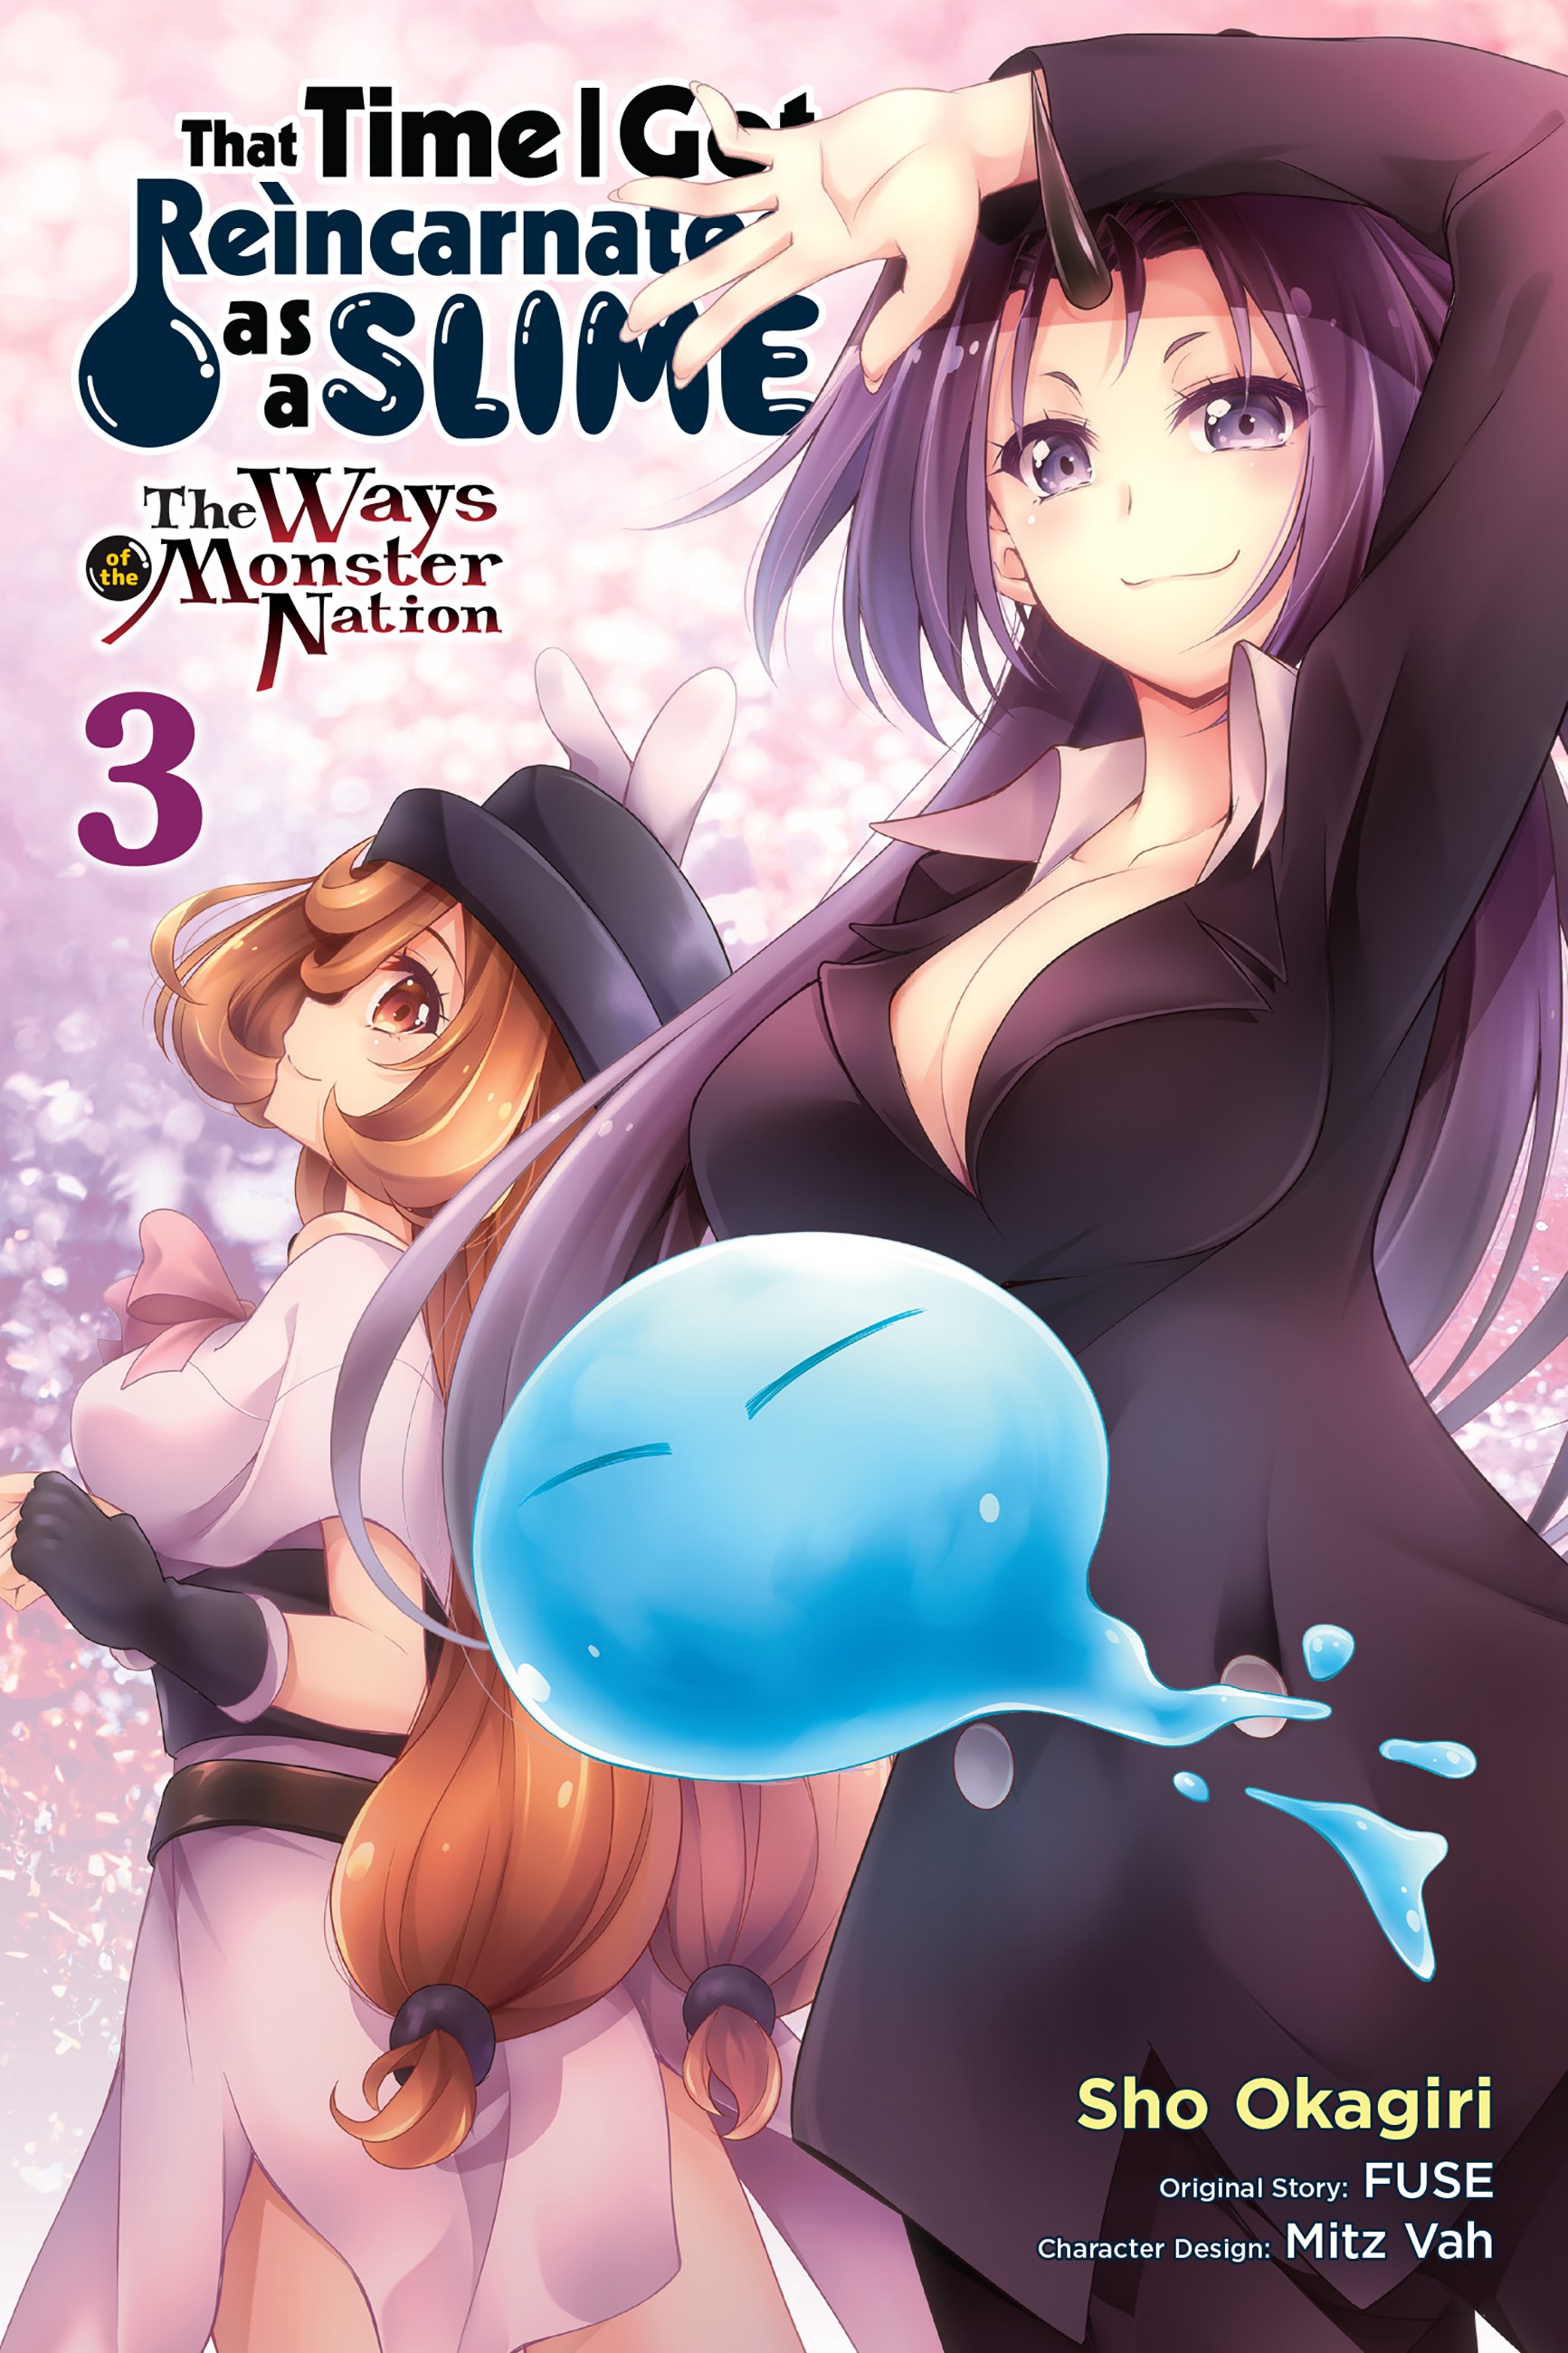 Tensei shitara Slime Datta Ken Otherworlder Vol.3 Izawa Shizue Special Ver.  - My Anime Shelf